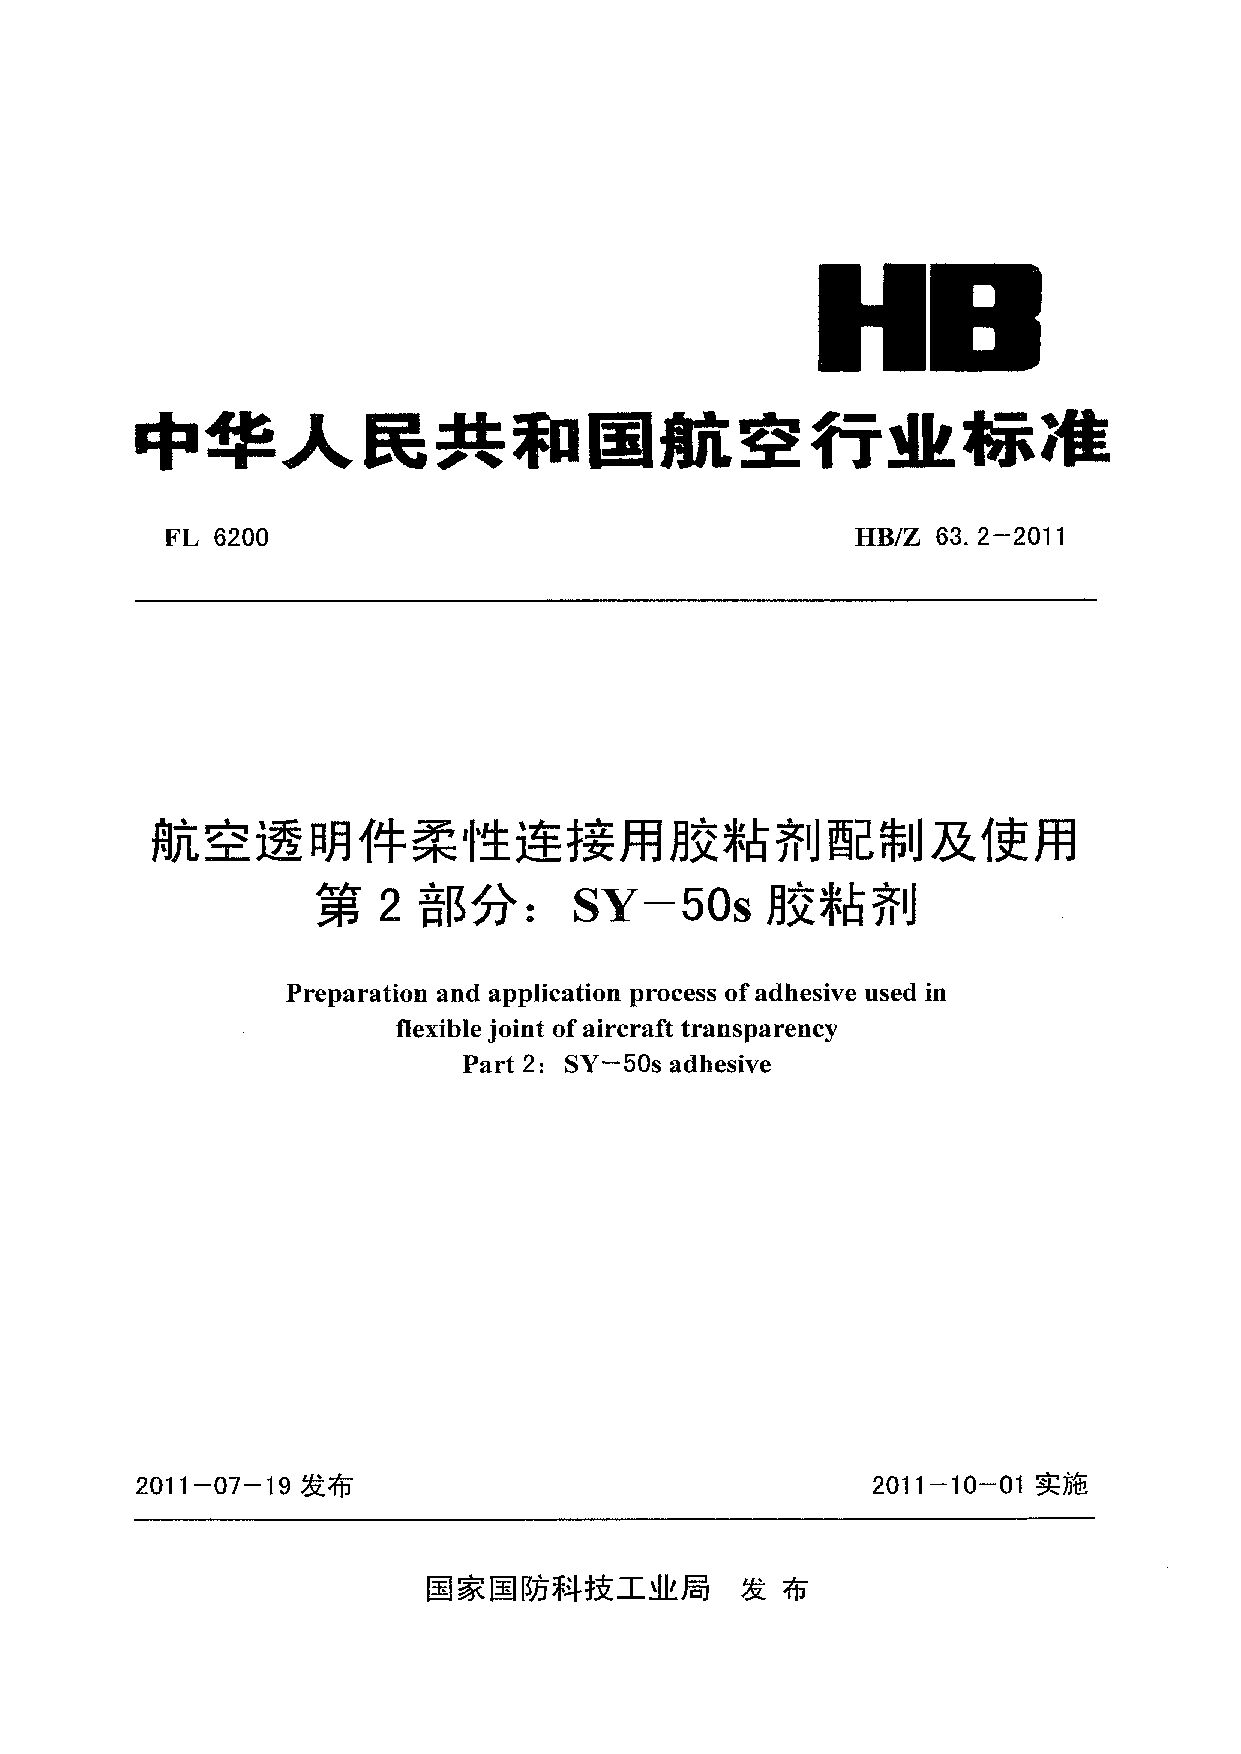 HB/Z 63.2-2011封面图